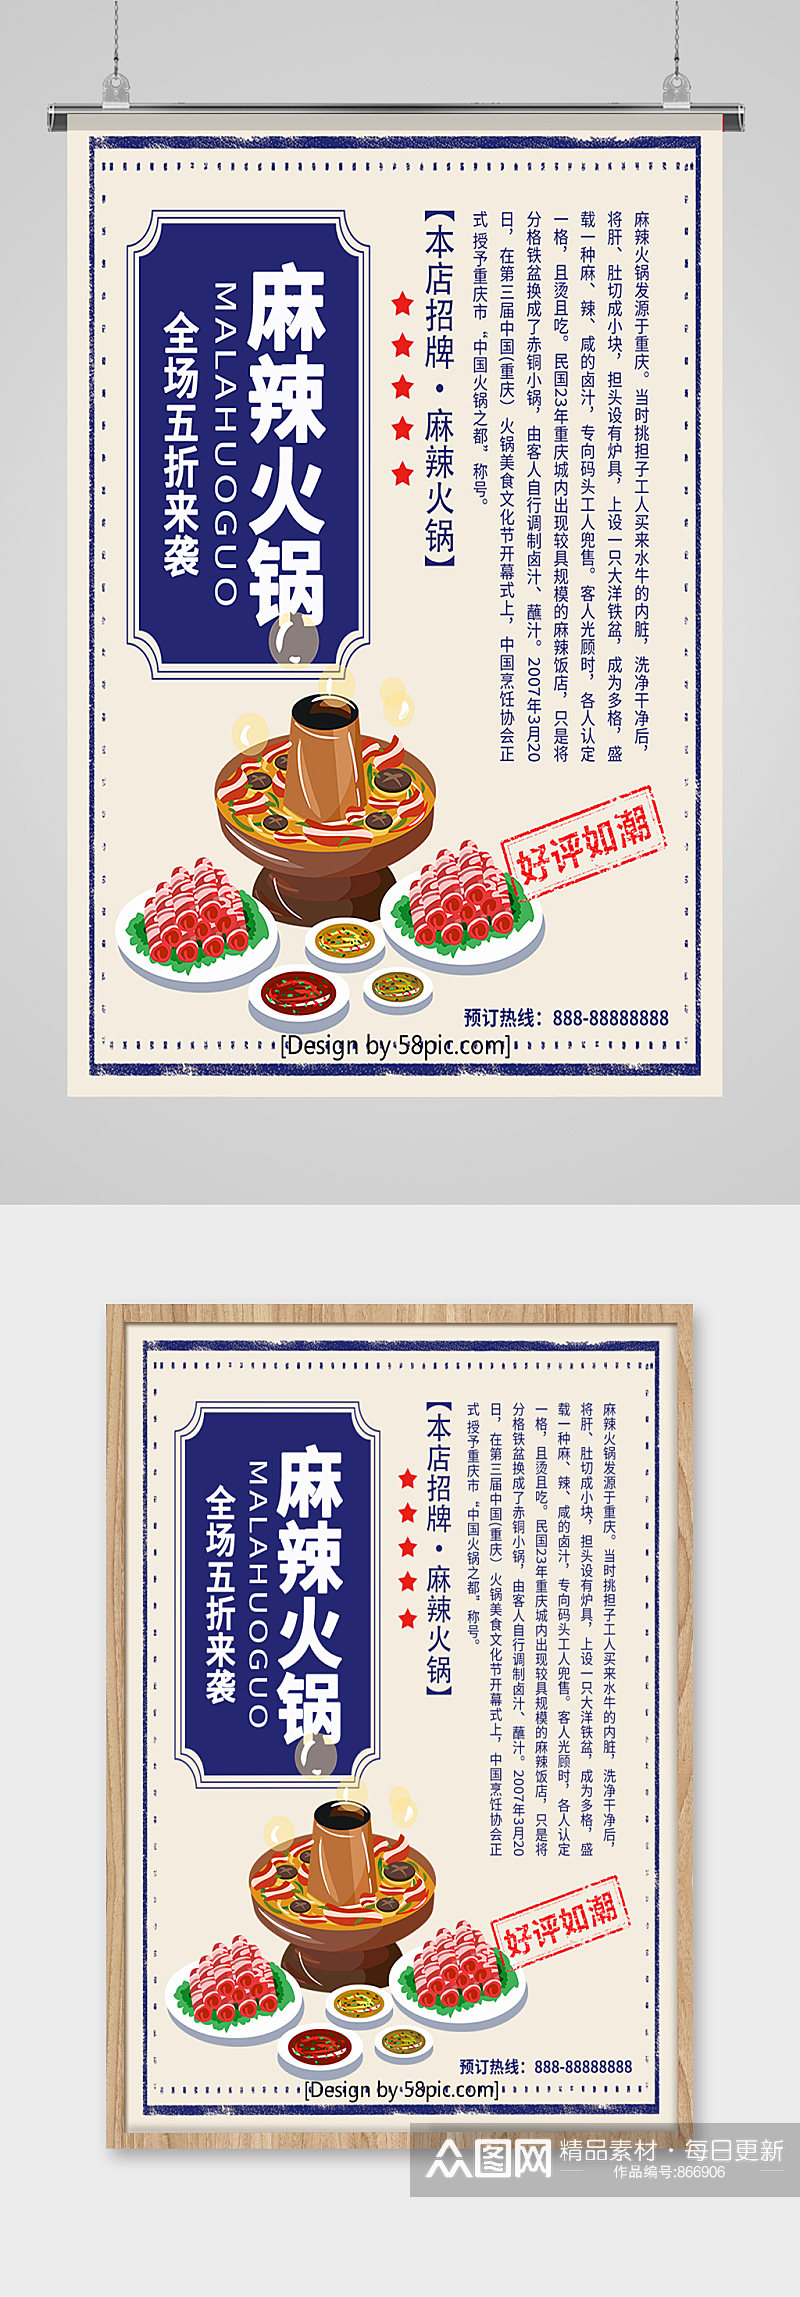 麻辣火锅菜品展板海报素材